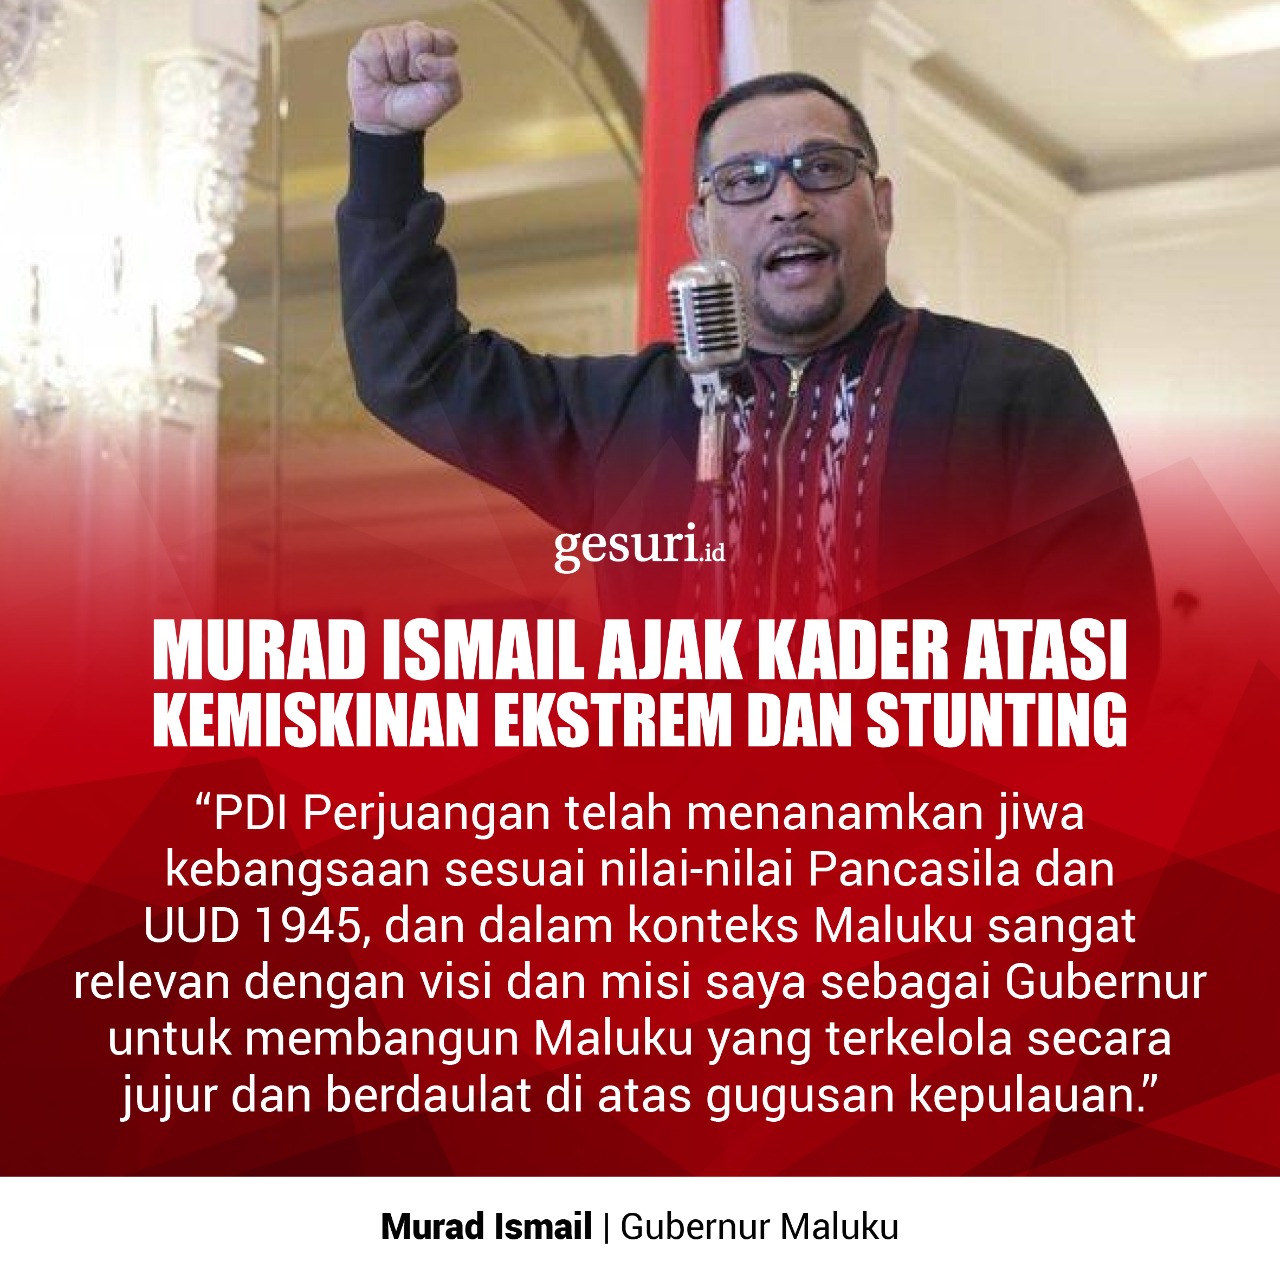 Murad Ajak Kader Atasi Kemiskinan dan Stunting (3/3)